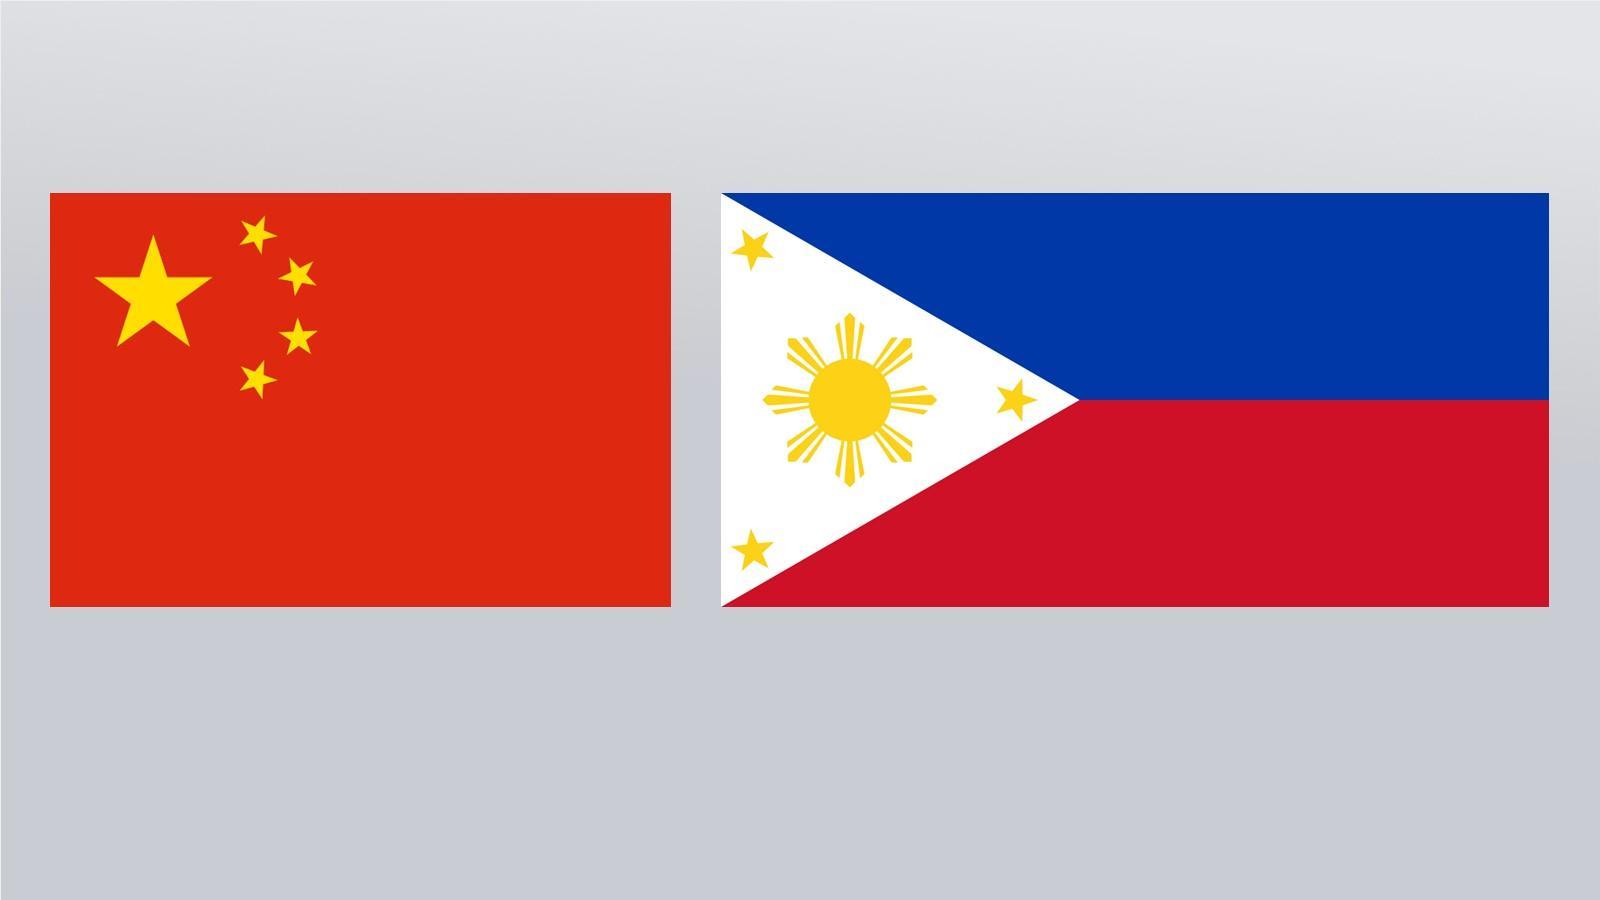 الرئيس الصيني يتحدث مع الرئيس الفلبيني المنتخب عبر الهاتف بشأن العلاقات الثنائية ...